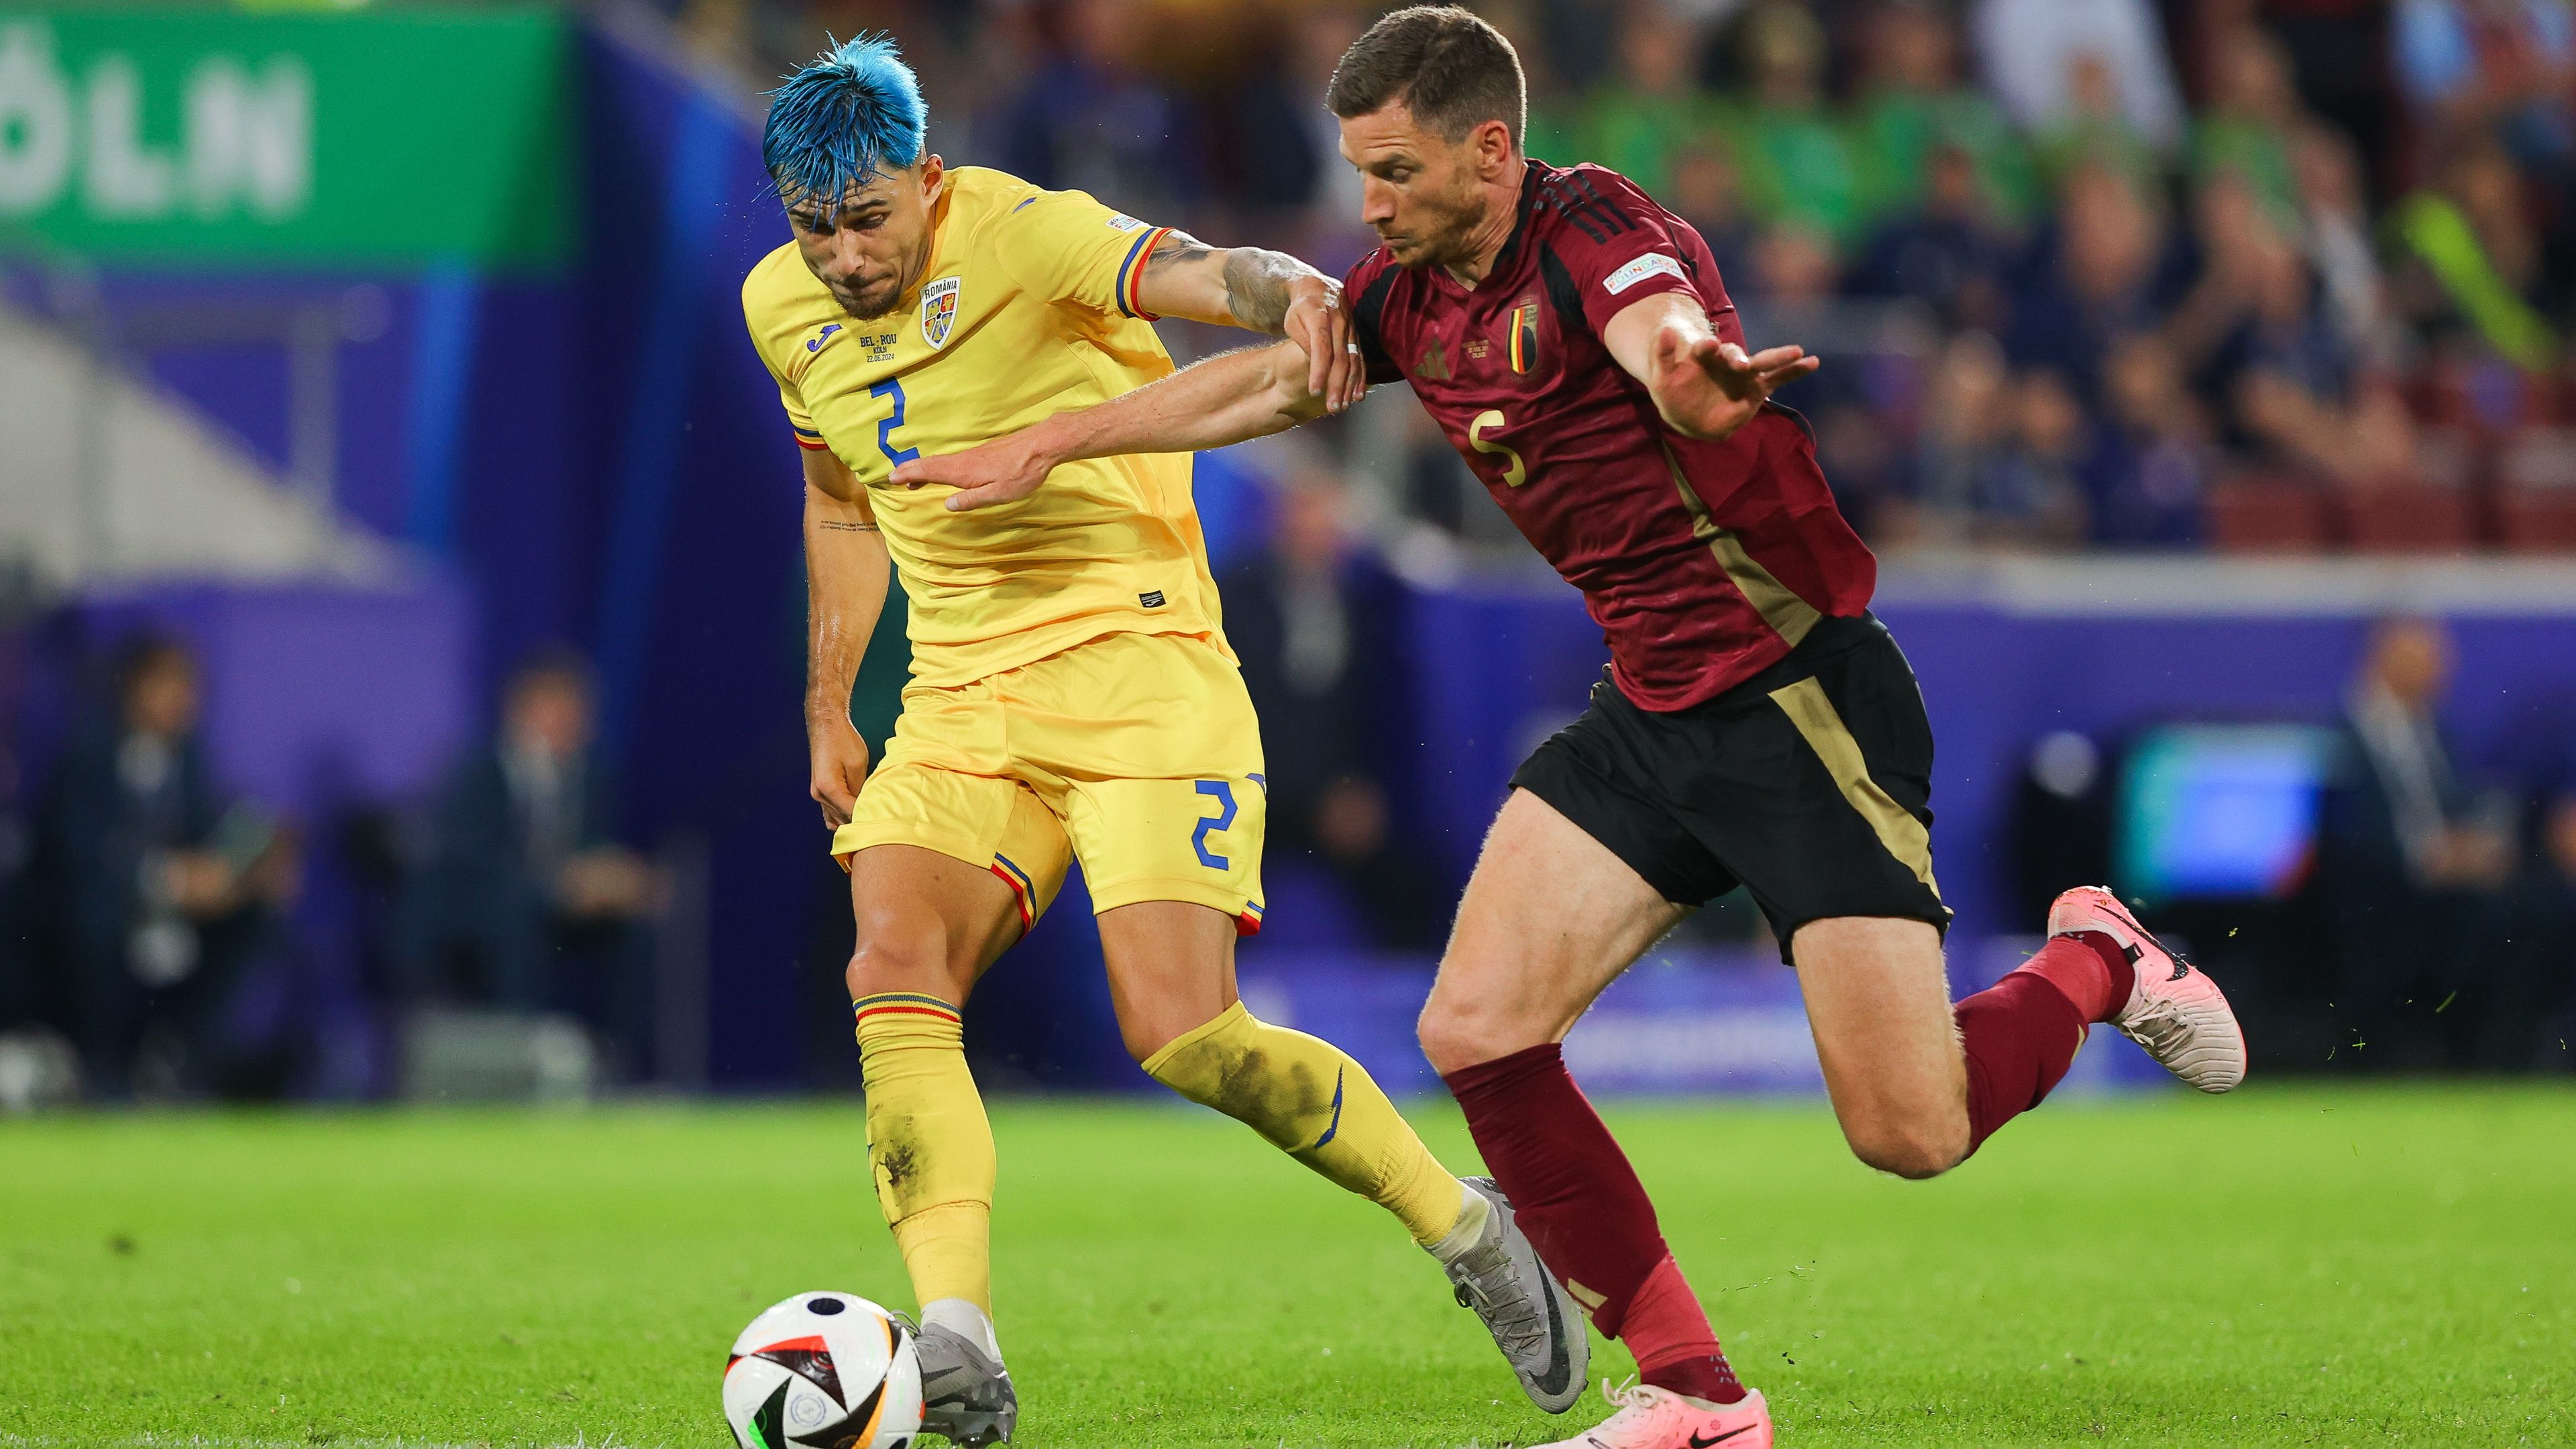 Bár a román válogatott kikapott Belgiumtól, Andrei Ratiu nem sok lehetőséget hagyott Jan Vertonghennek a kibontakozásra. (Fotó: Getty Images)